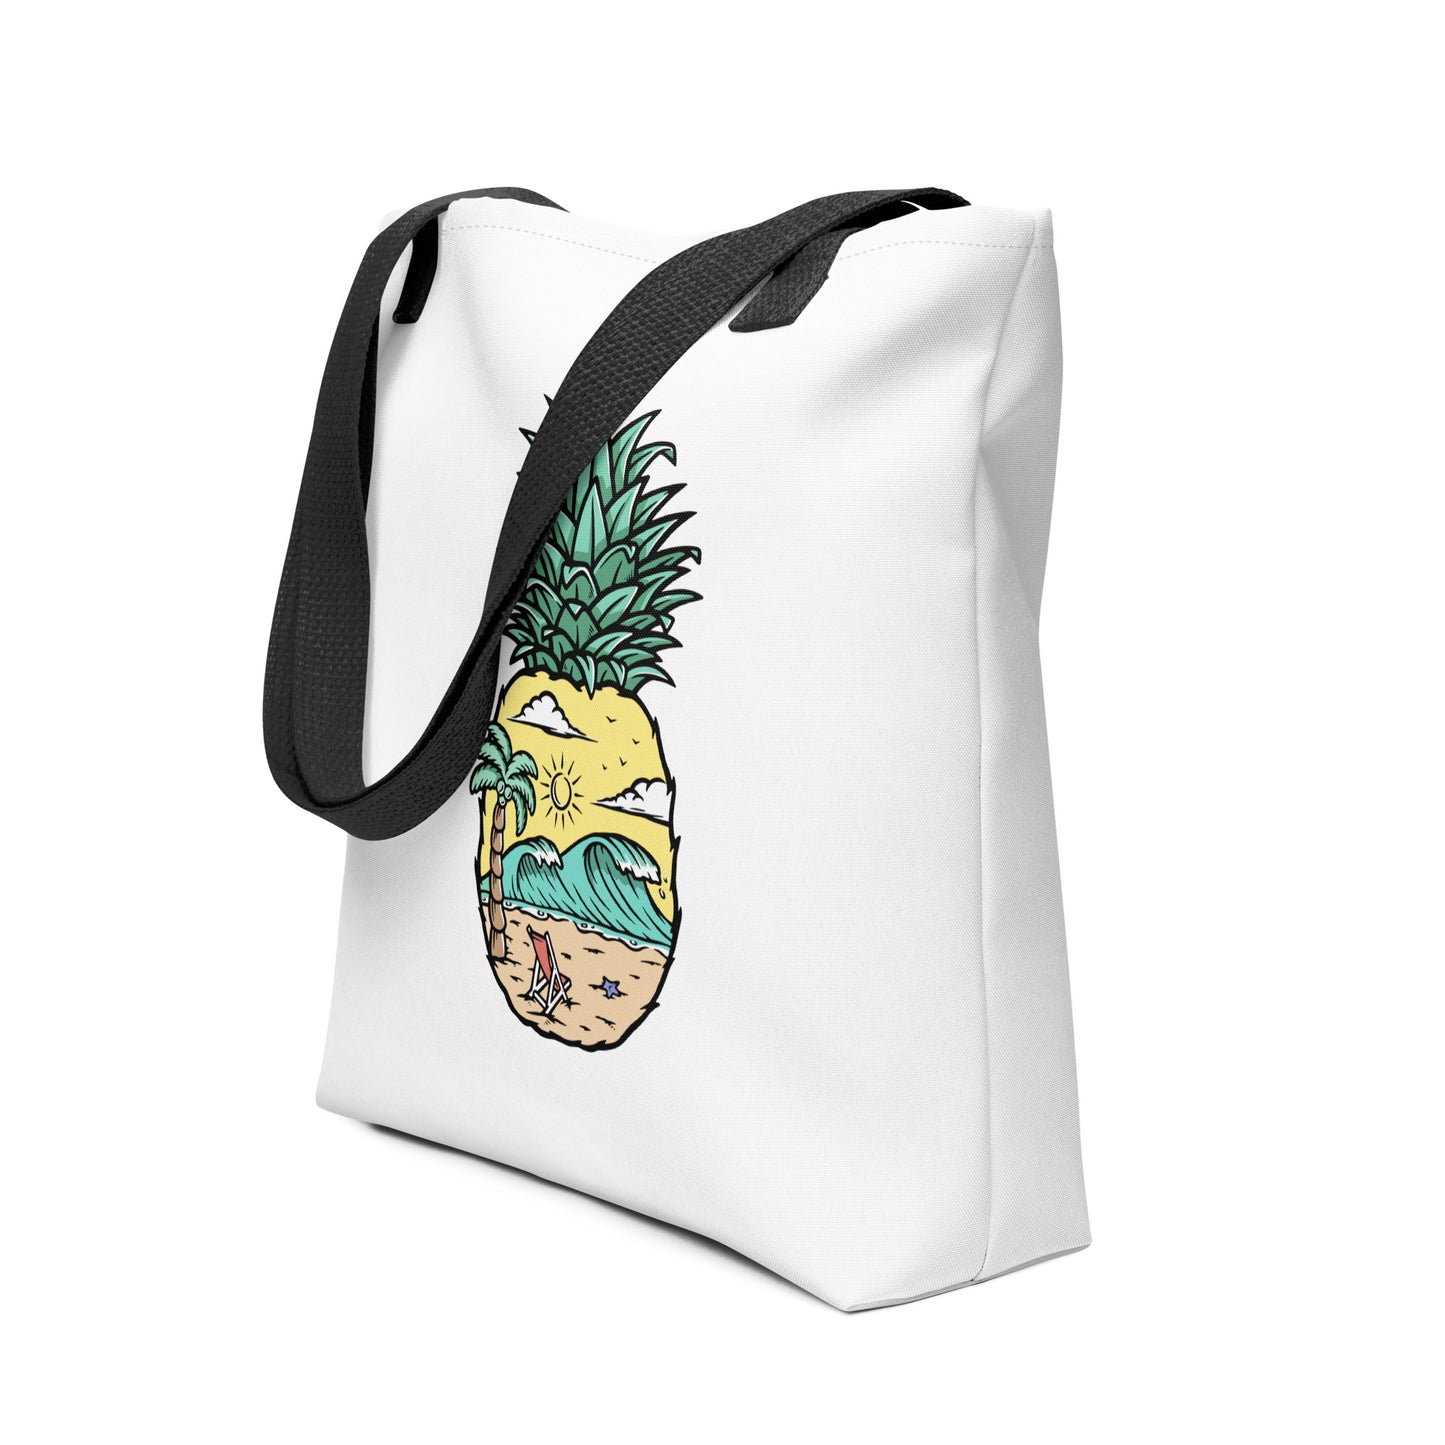 Pineapple Beach white tote bag